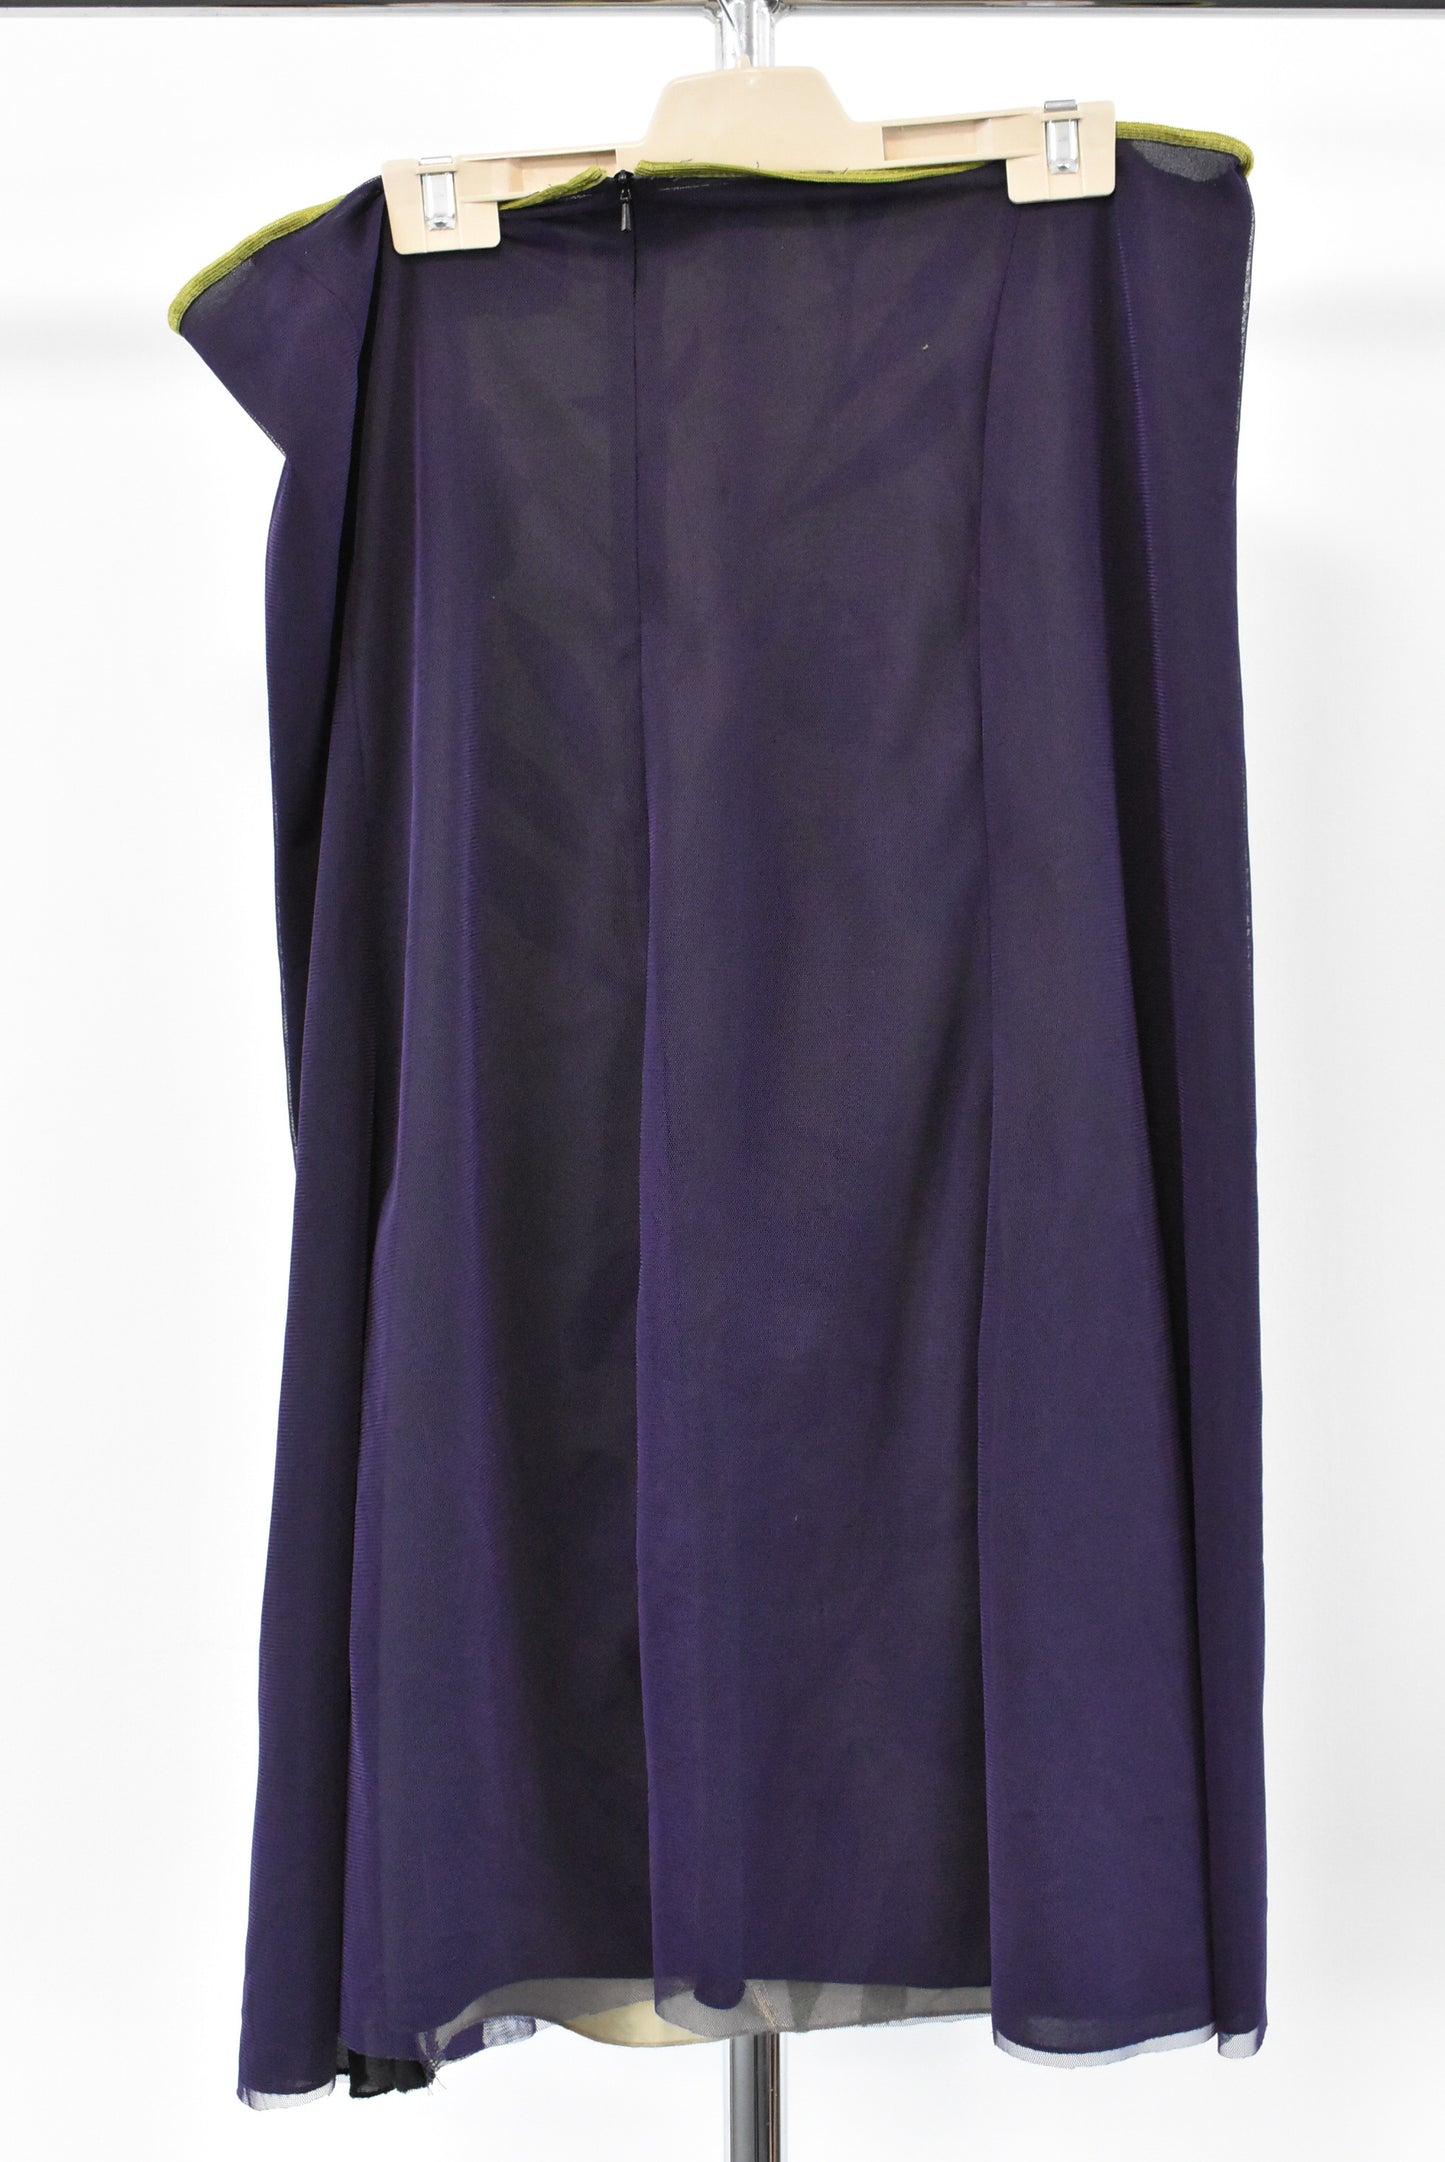 Hallelujah purple embroidered silk skirt, made in Dunedin, NZ, L+